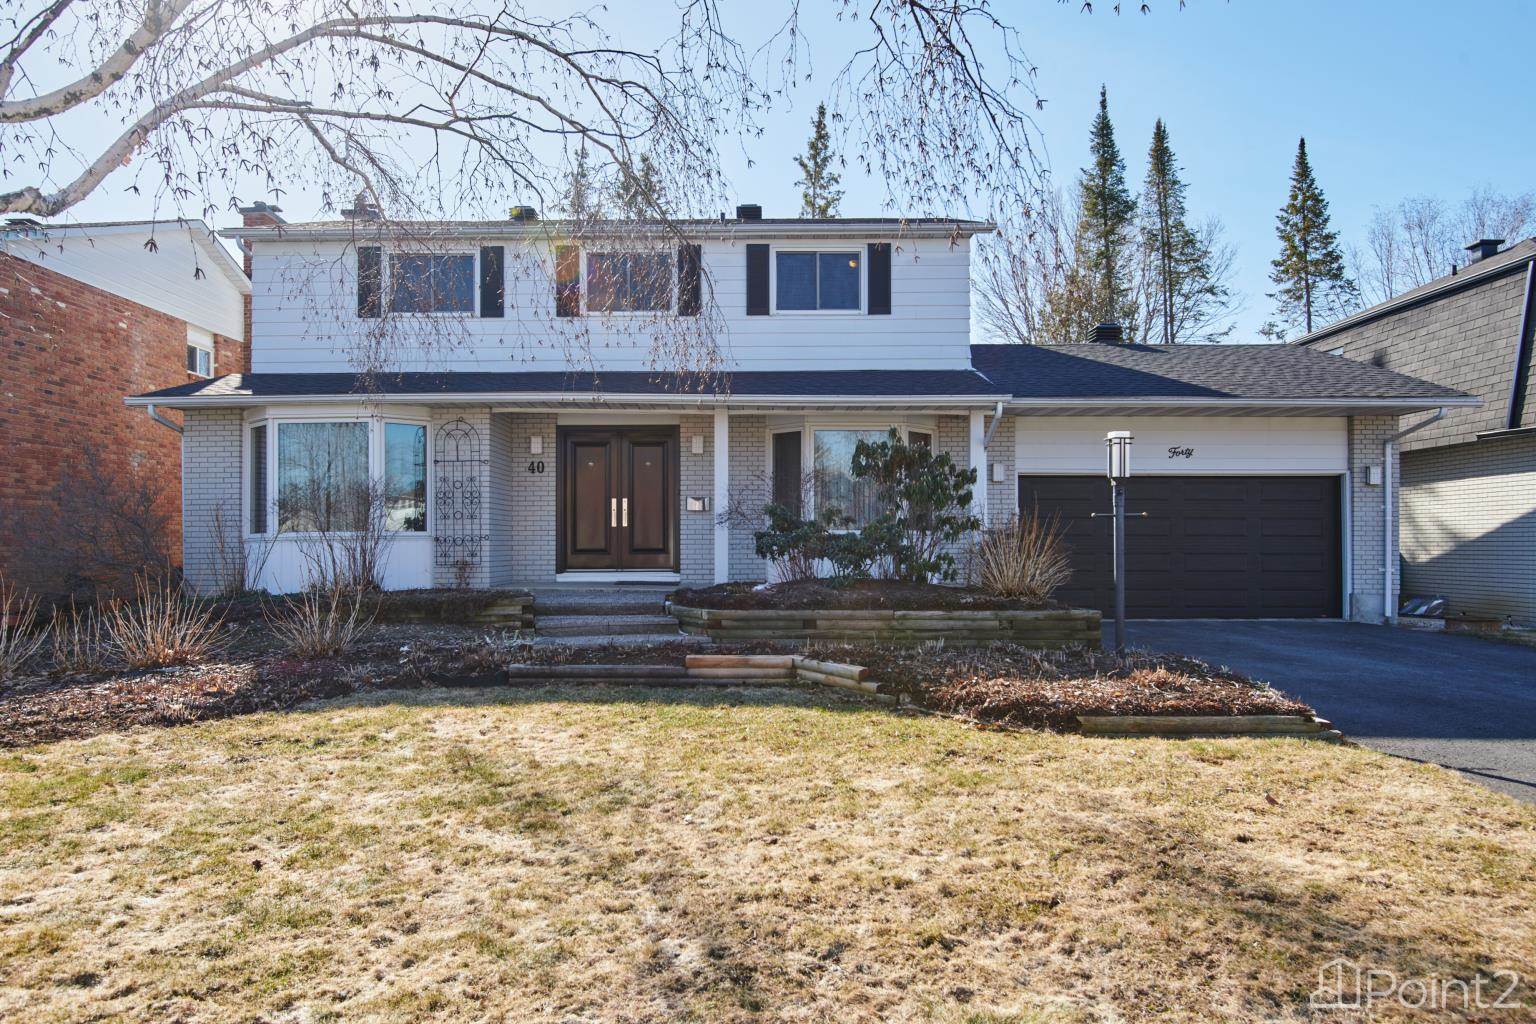 Residential Home For Sale |  | Ottawa | K2E7B9